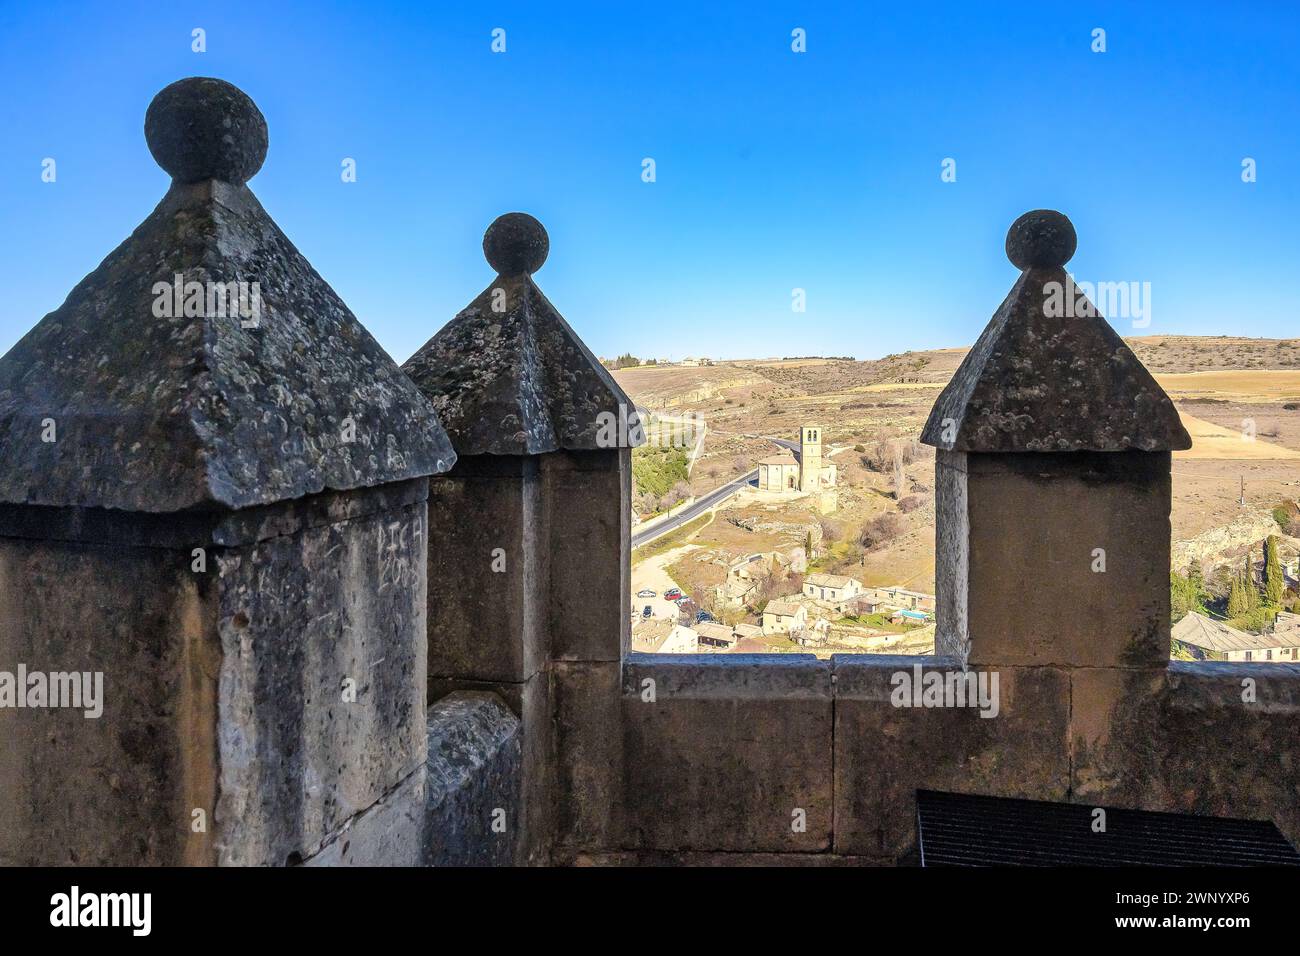 Befestigte Mauer mit Merlons. Mittelalterliche architektonische Besonderheiten in Alcazar von SEGOVIA, SPANIEN Stockfoto